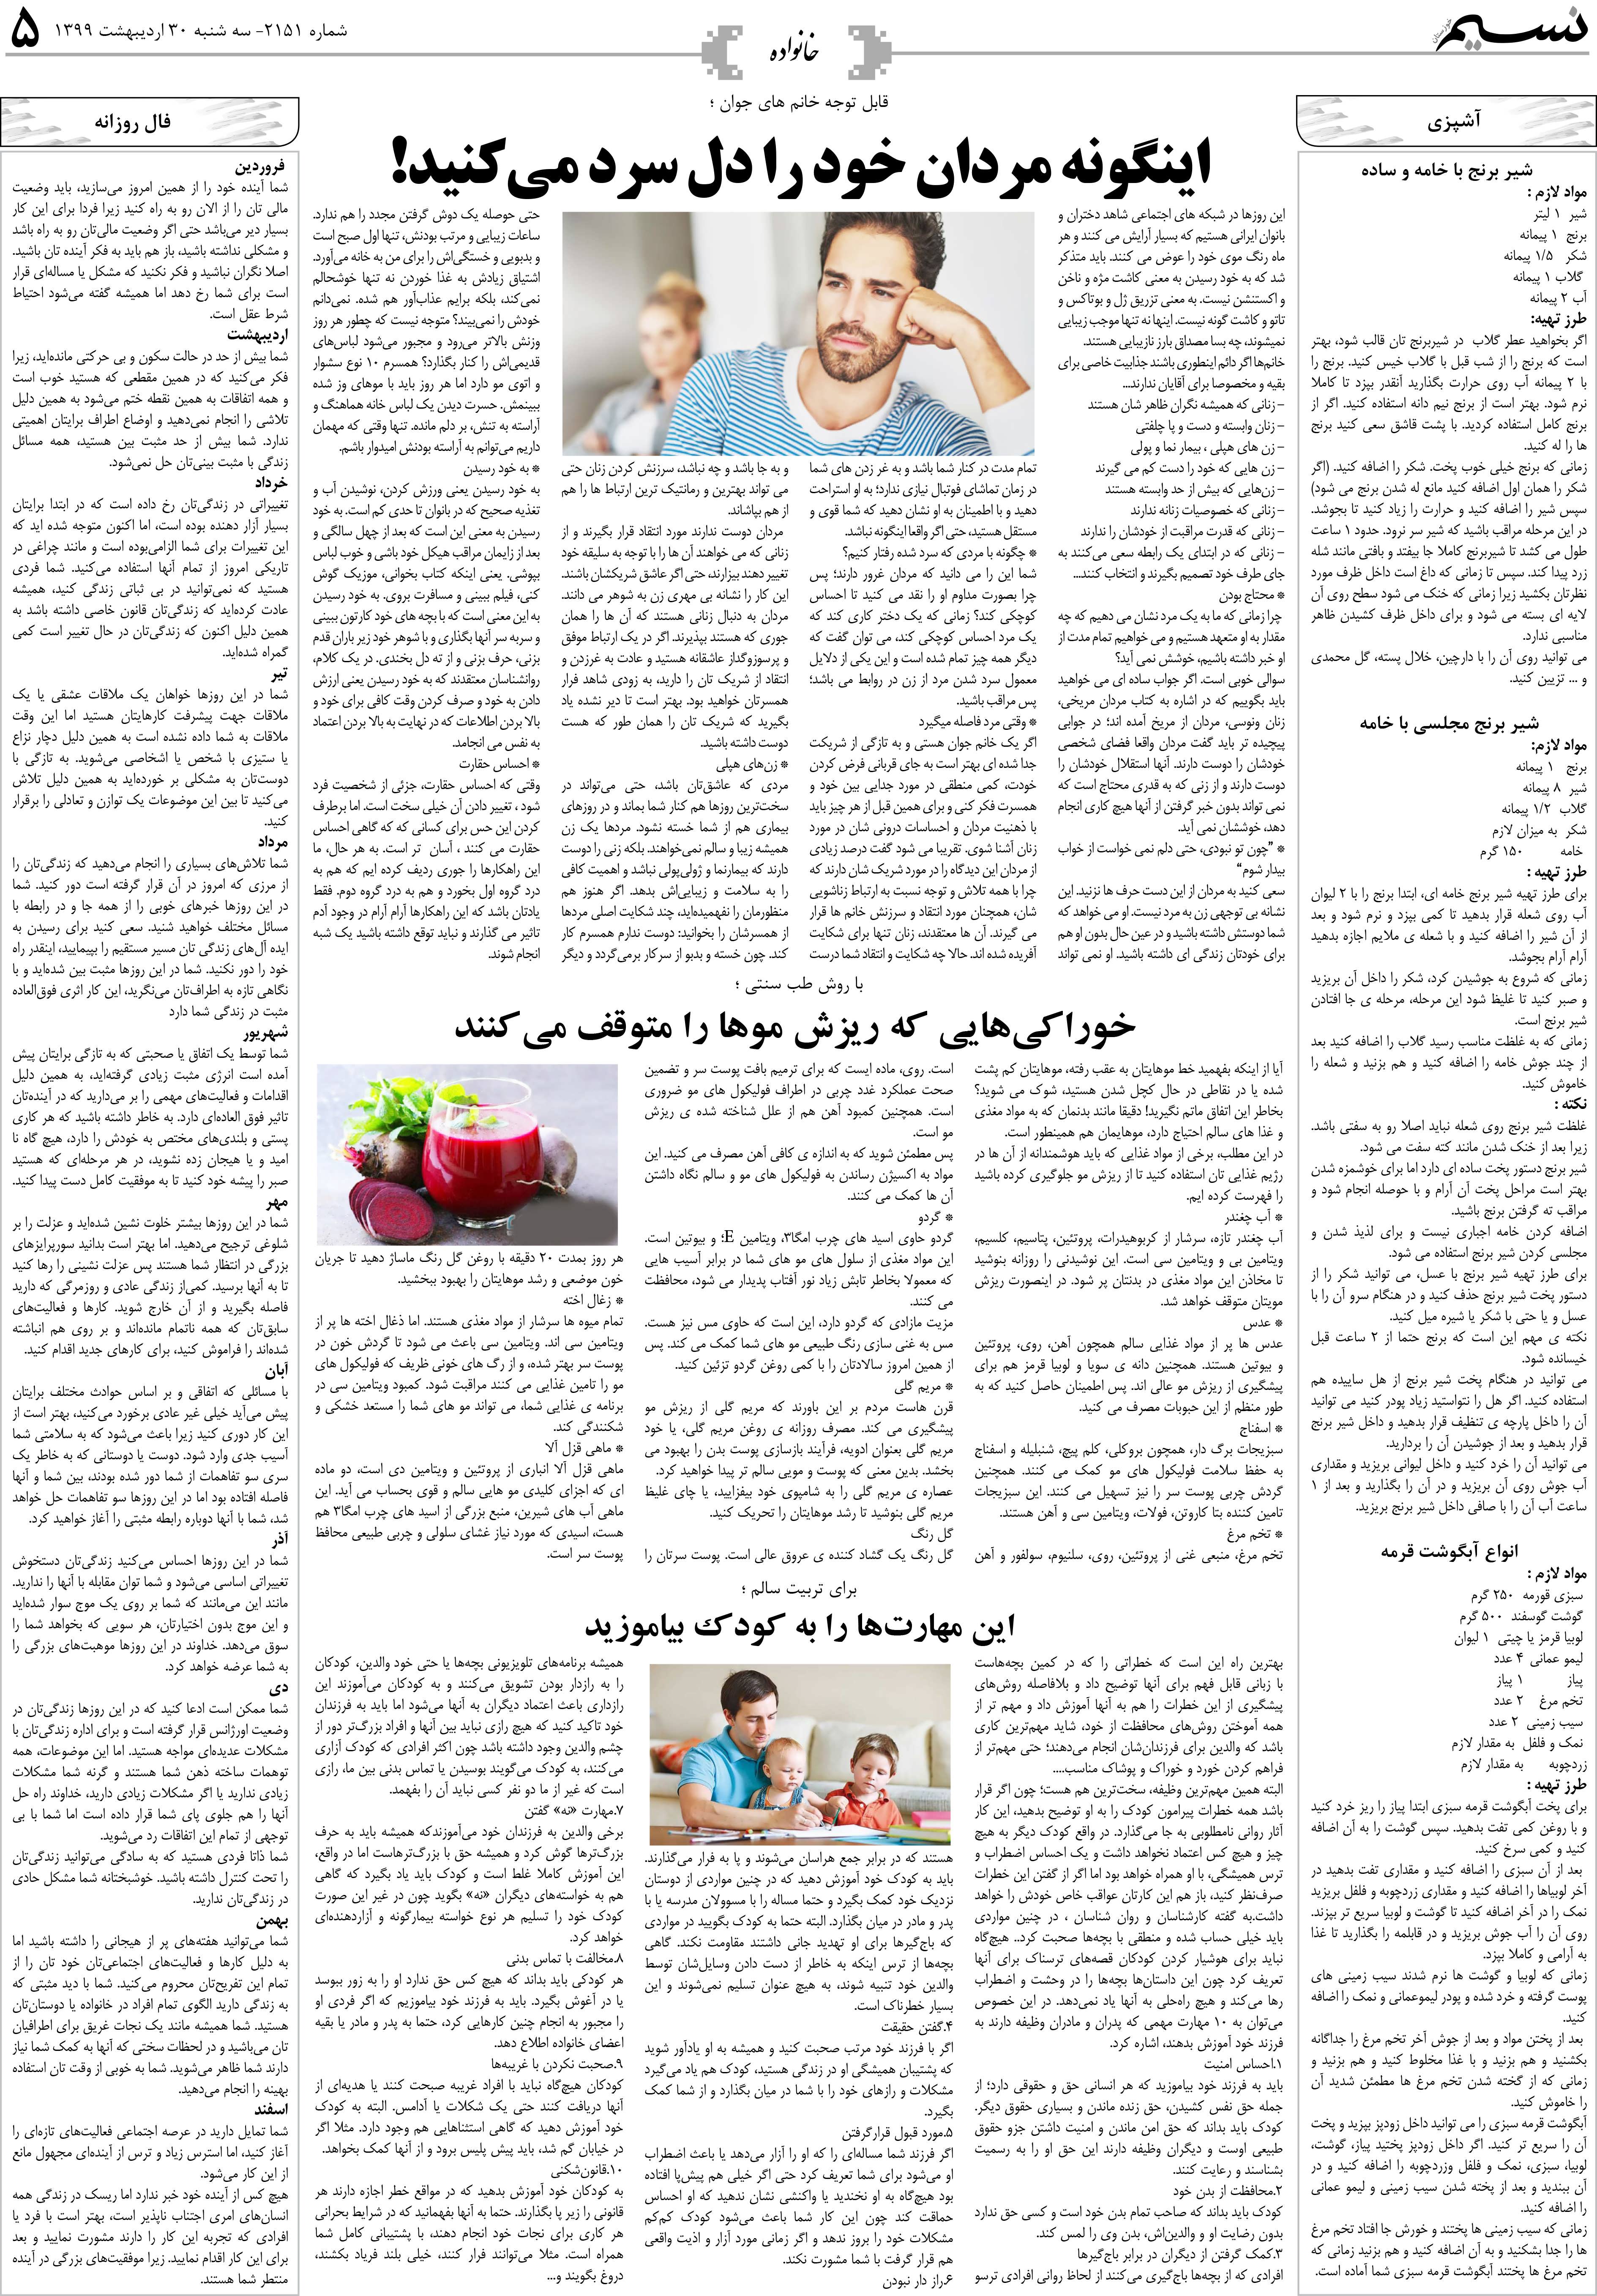 صفحه خانواده روزنامه نسیم شماره 2151